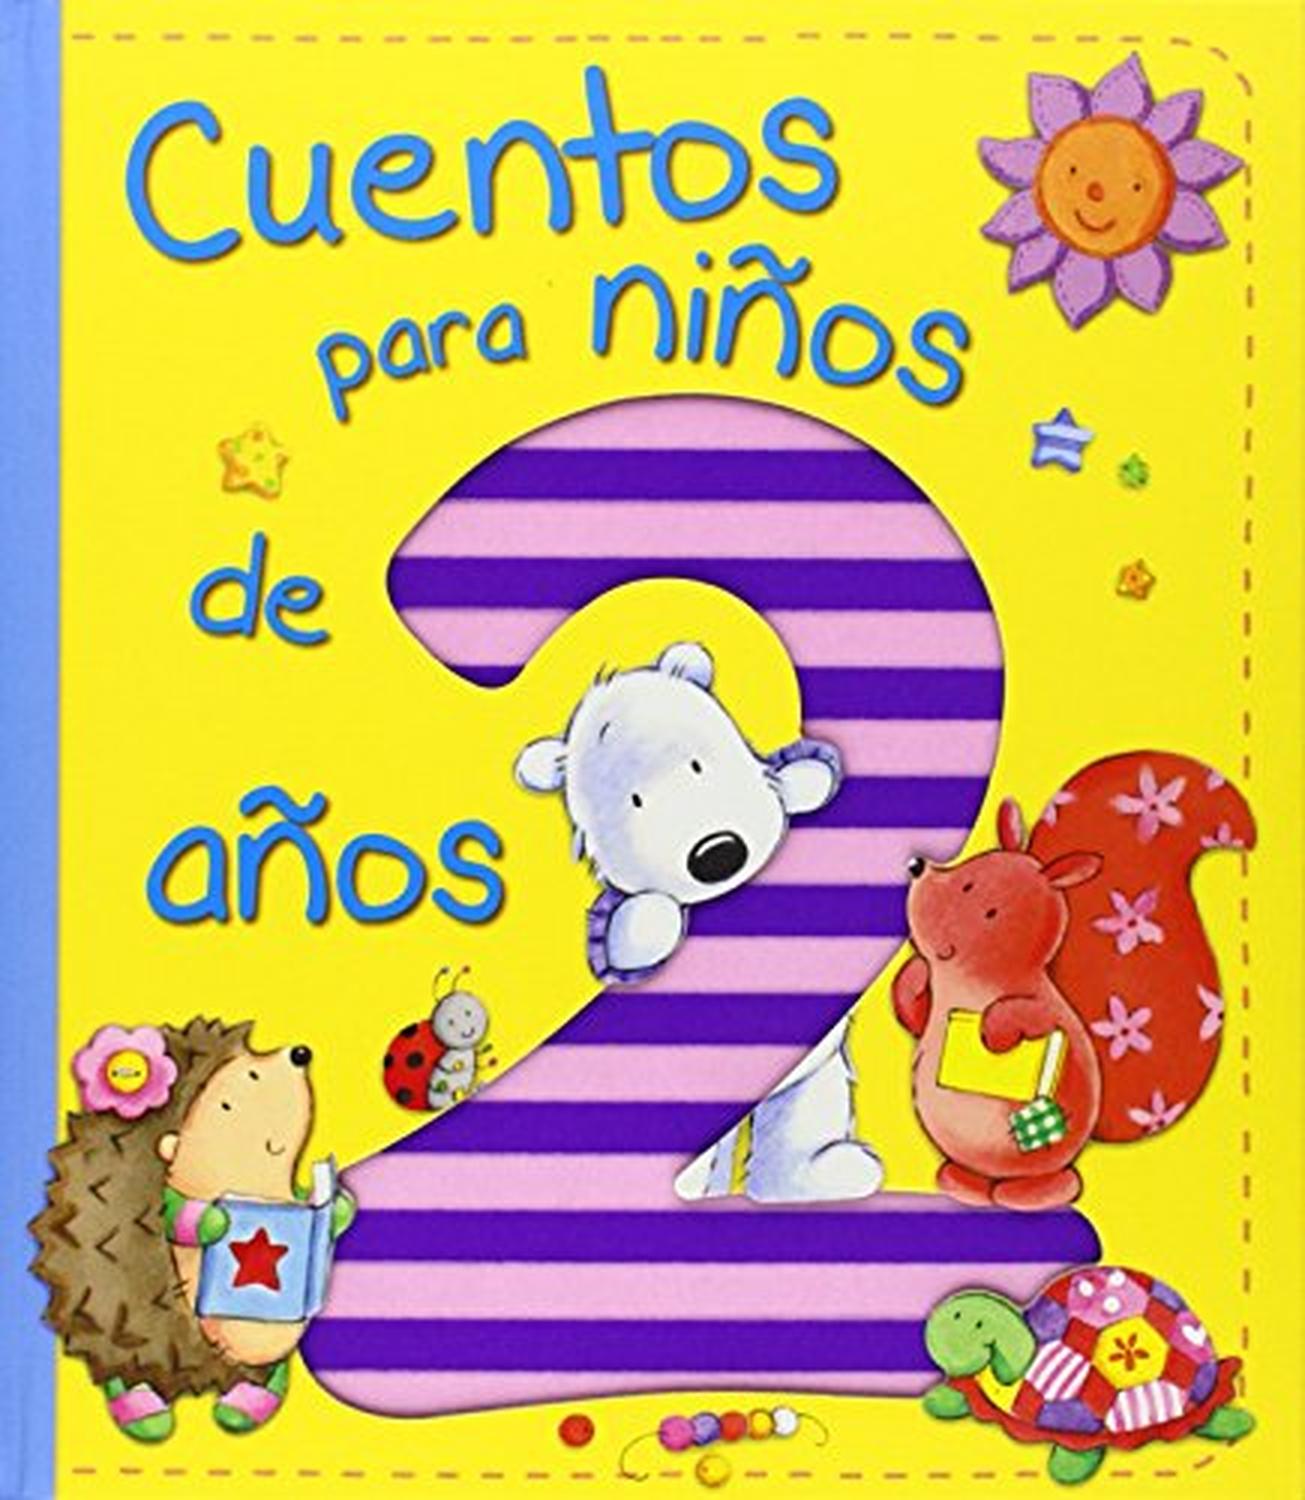 Cuentos Para Niños de 2 Años (Spanish Edition) (Hardcover)